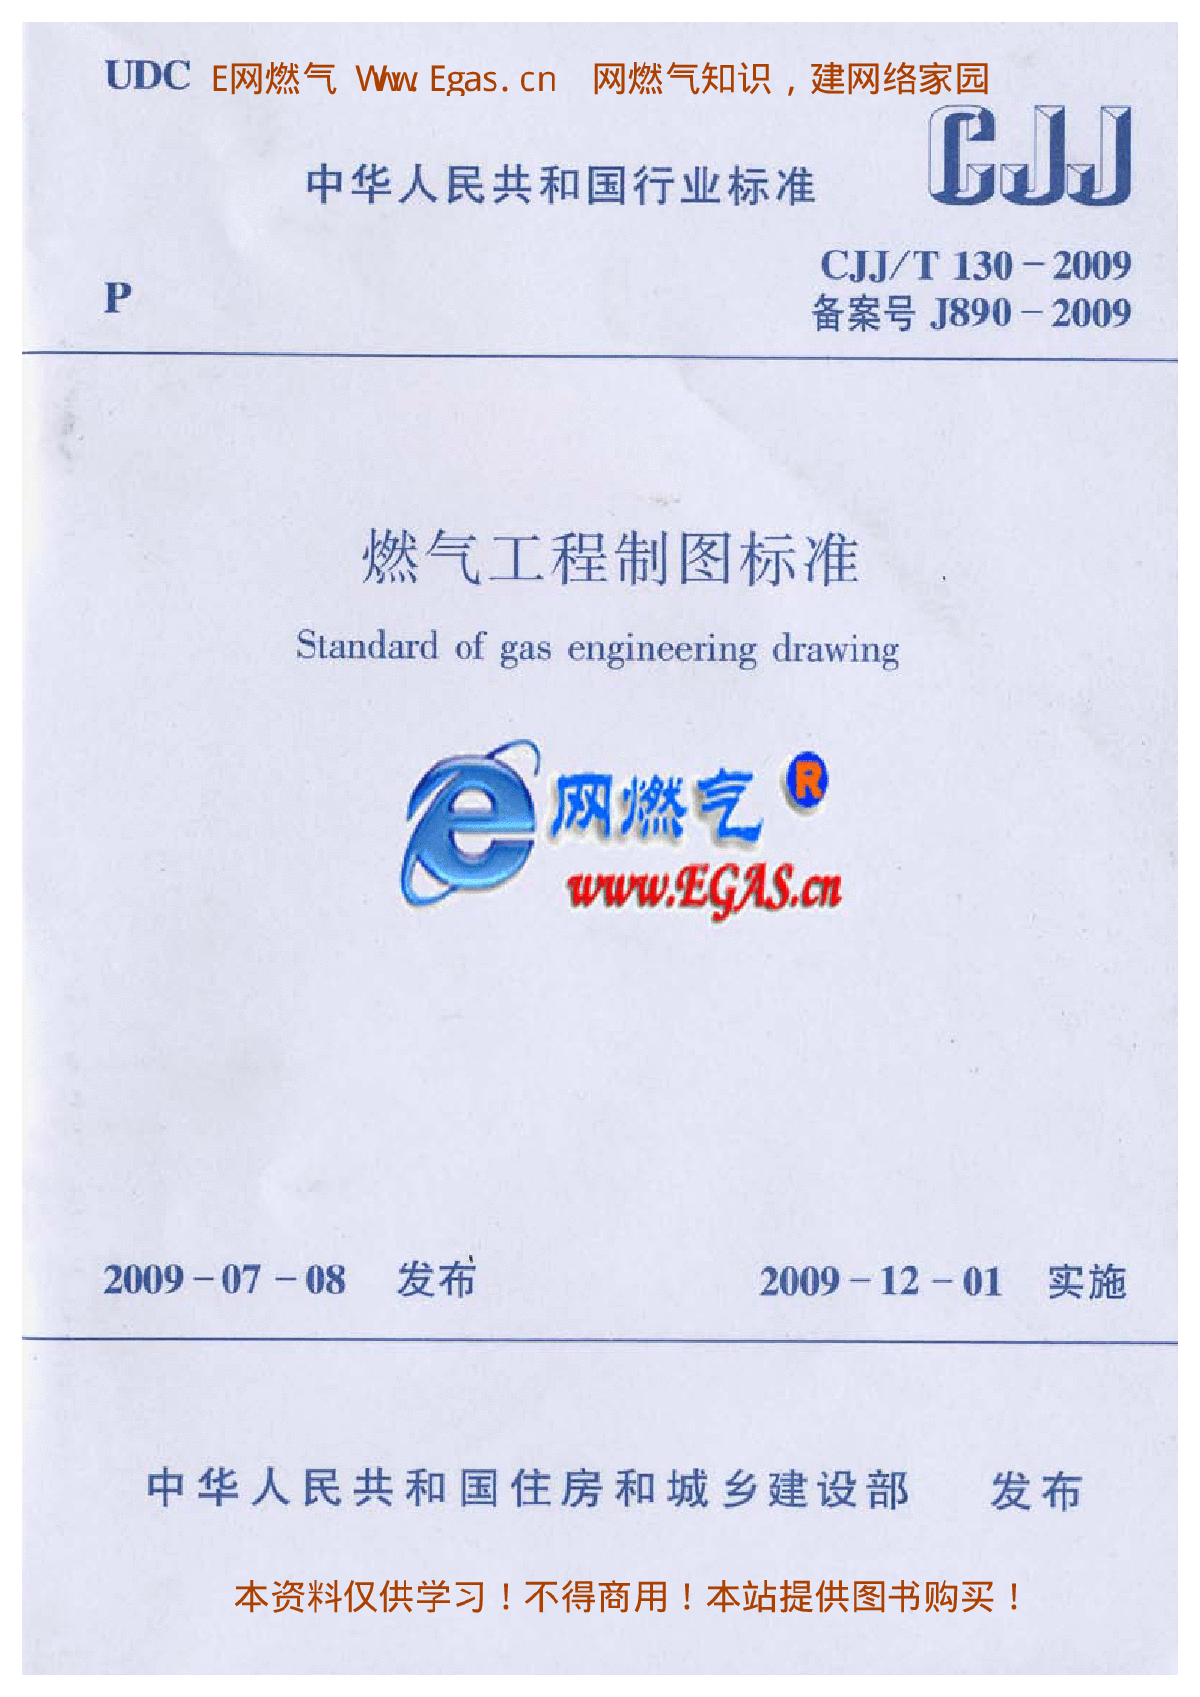 燃气工程制图标准CJJT130-2009.pdf